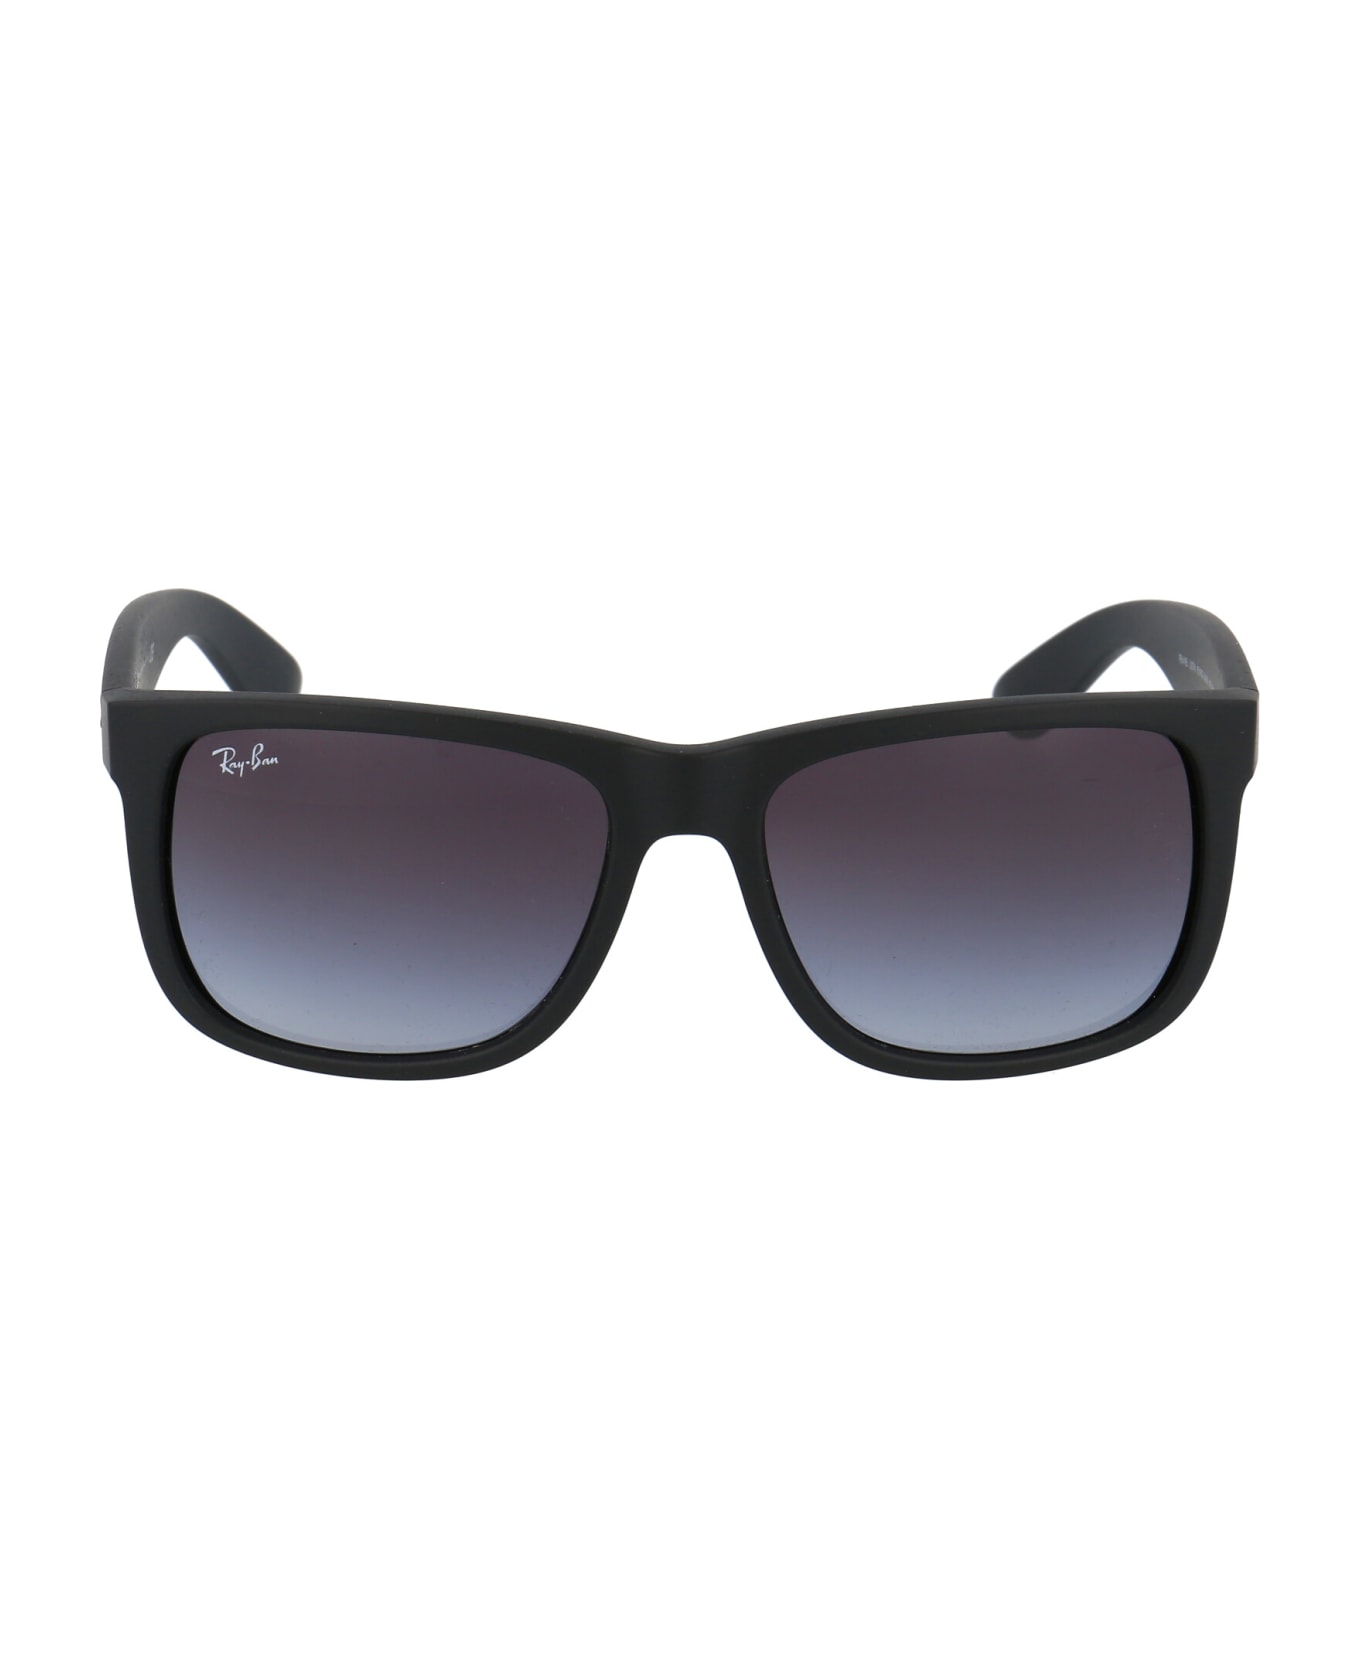 Ray-Ban Justin Sunglasses - 601/8G BLACK